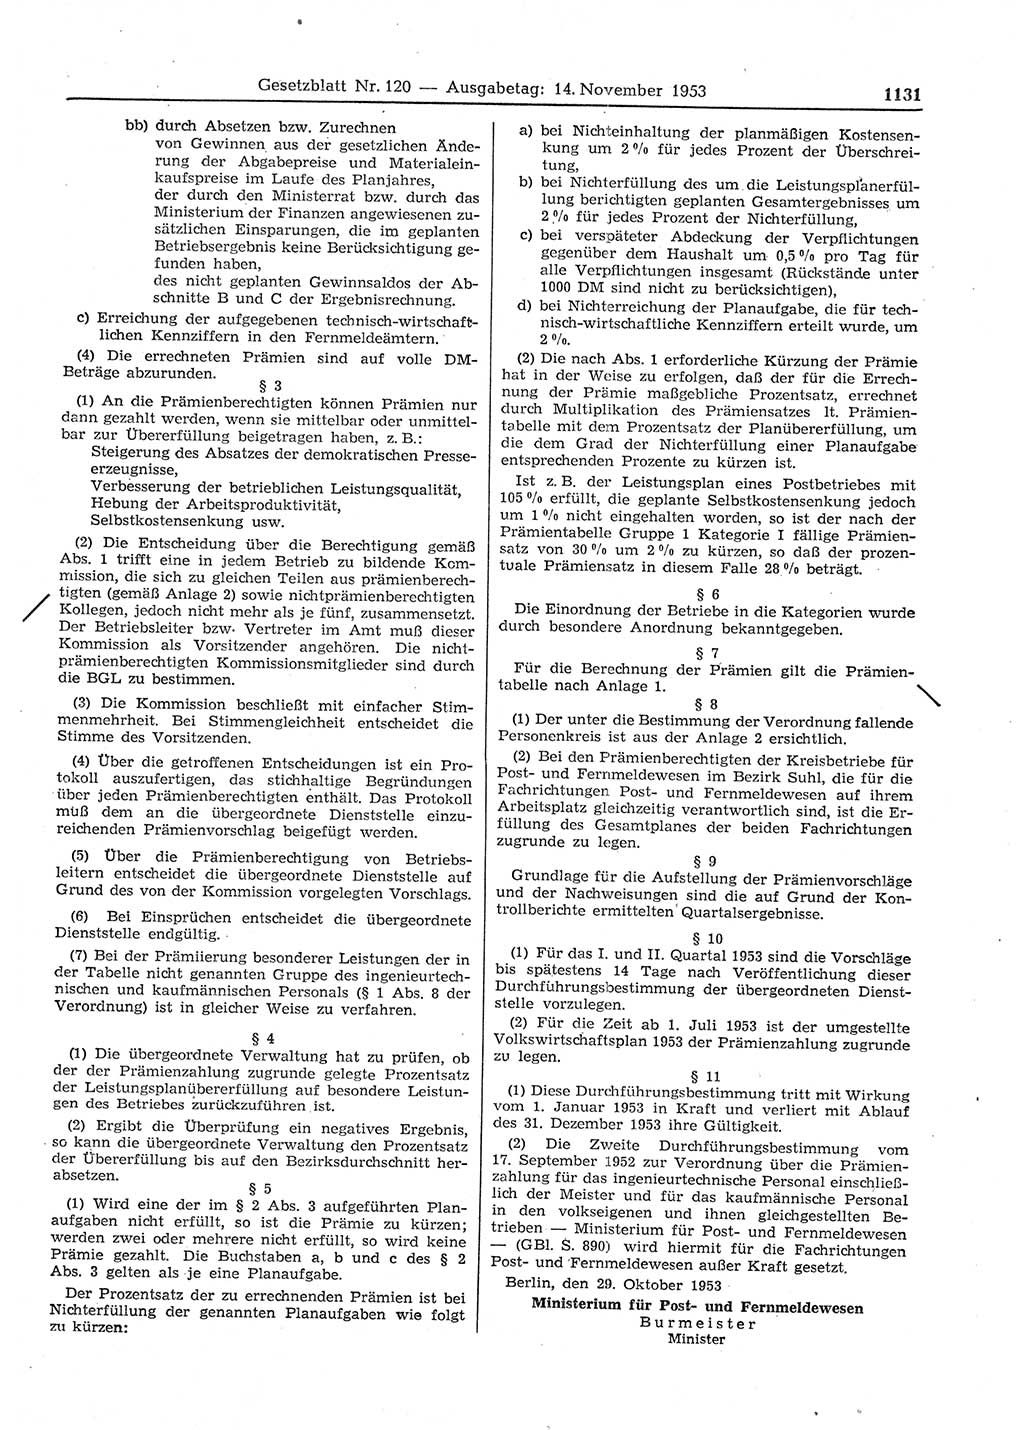 Gesetzblatt (GBl.) der Deutschen Demokratischen Republik (DDR) 1953, Seite 1131 (GBl. DDR 1953, S. 1131)